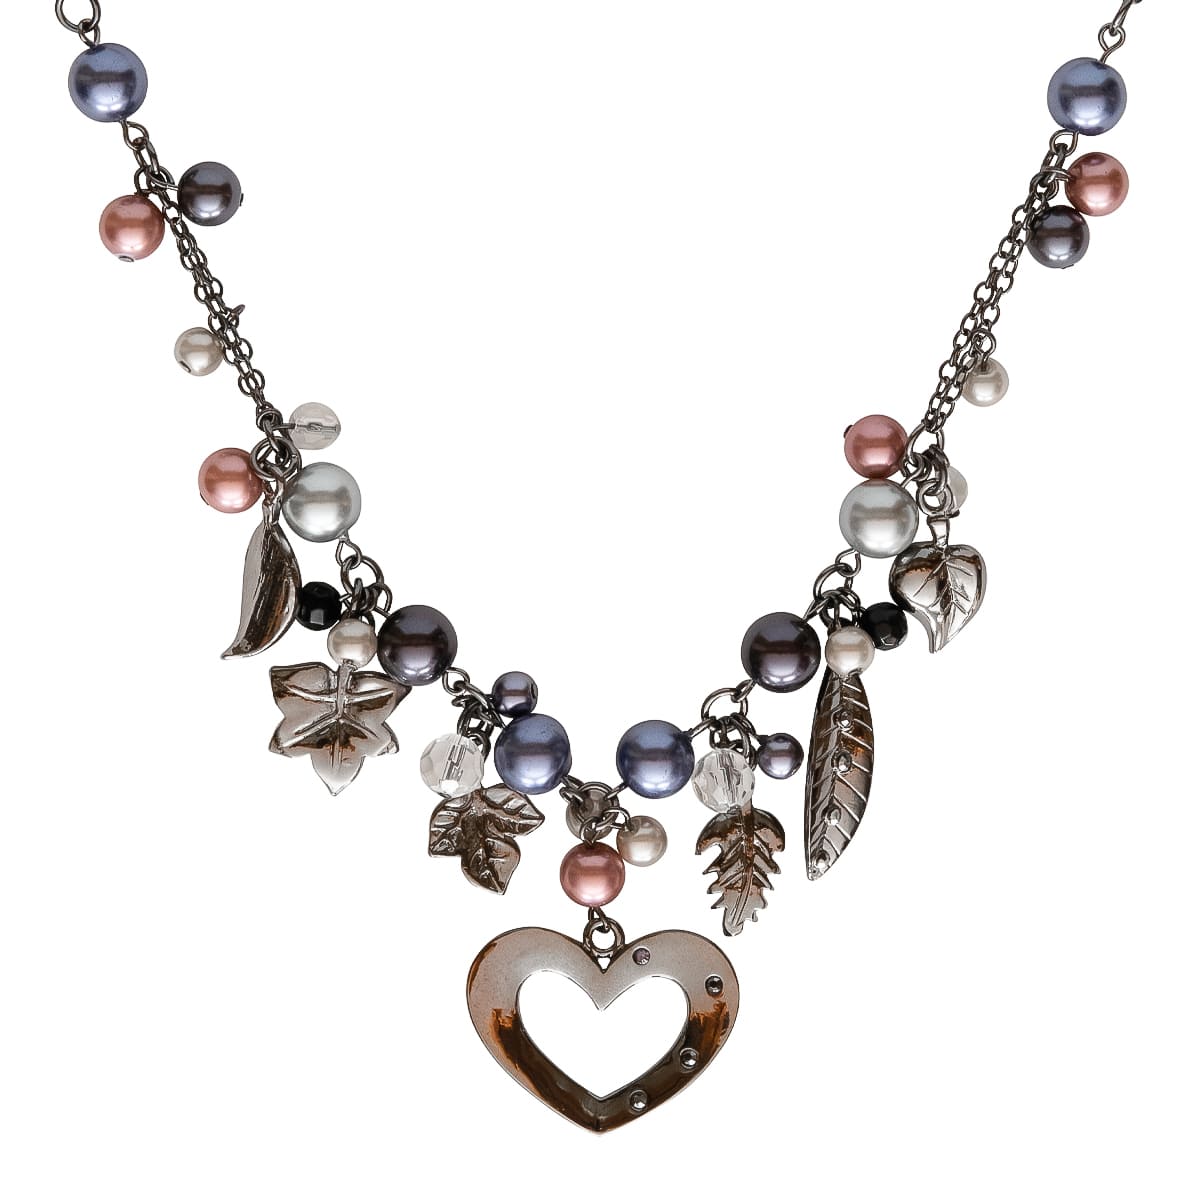 K.V. Fuchs Design Schmuck Damen Halskette in silber mit Herz, Perlen in rosa, schwarz, weiß und Zirkonia in grau, schwarz »K-3002«